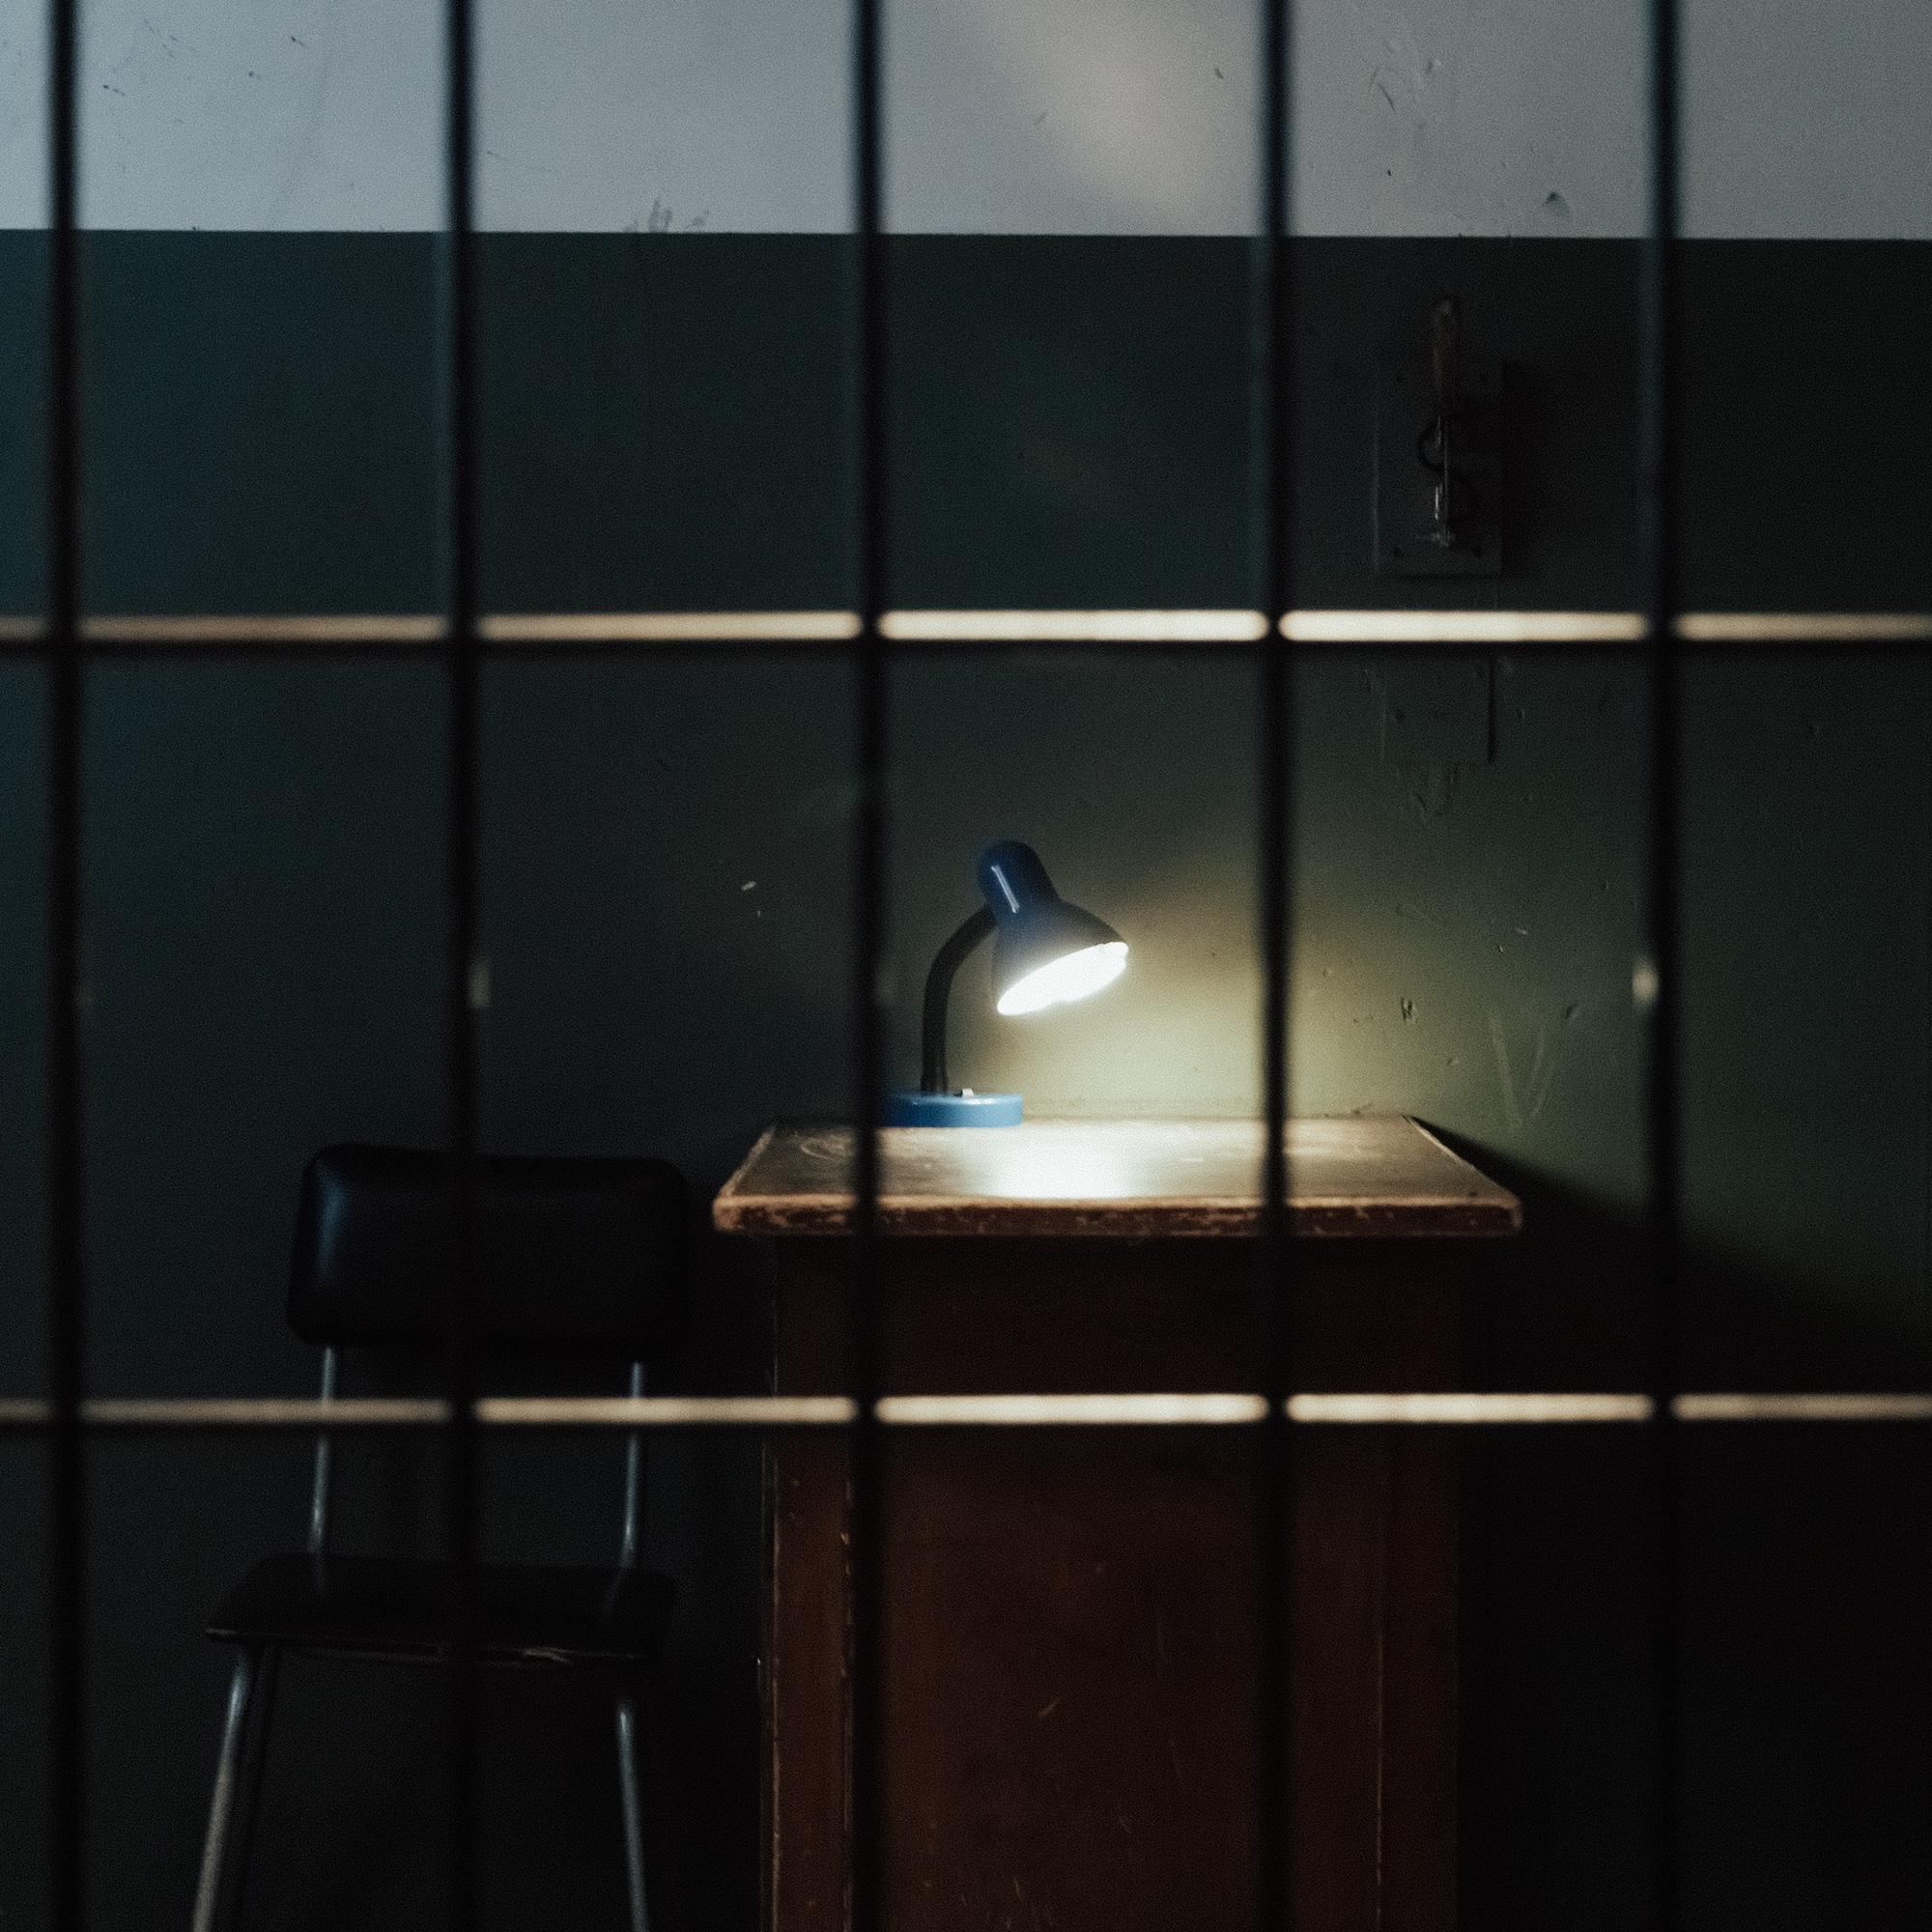 Foto: Schreibtisch mit leuchtender Lampe im Dunkeln hinter Gittern